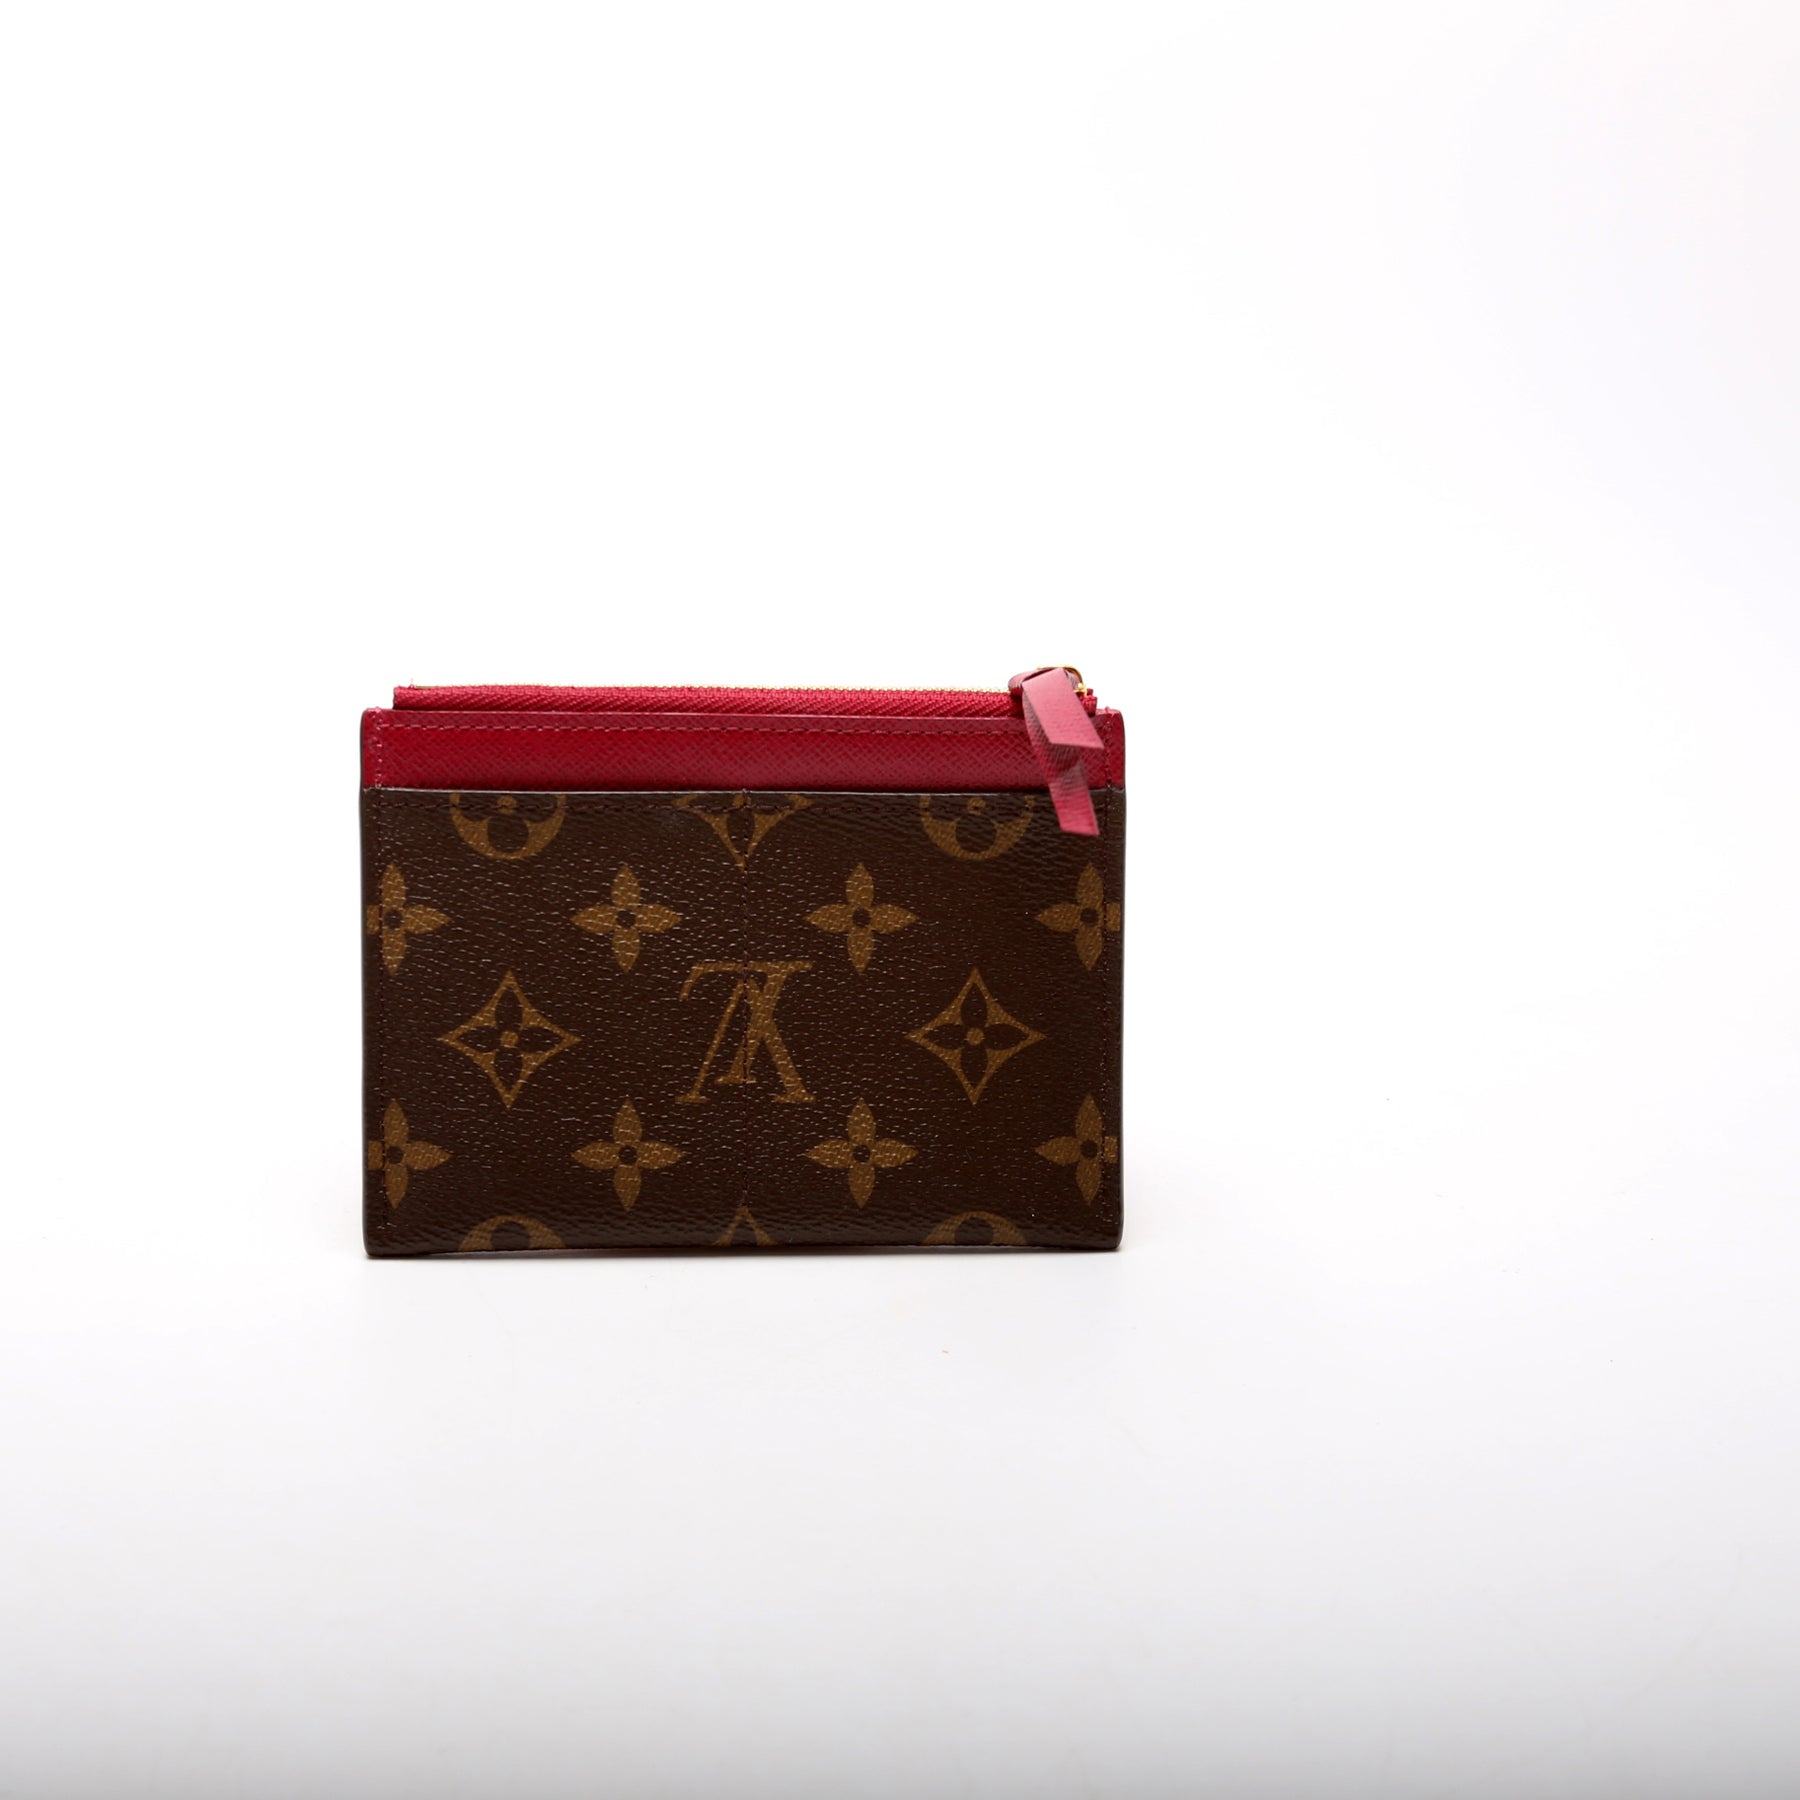 New! Louis Vuitton Zipped Card Wallet